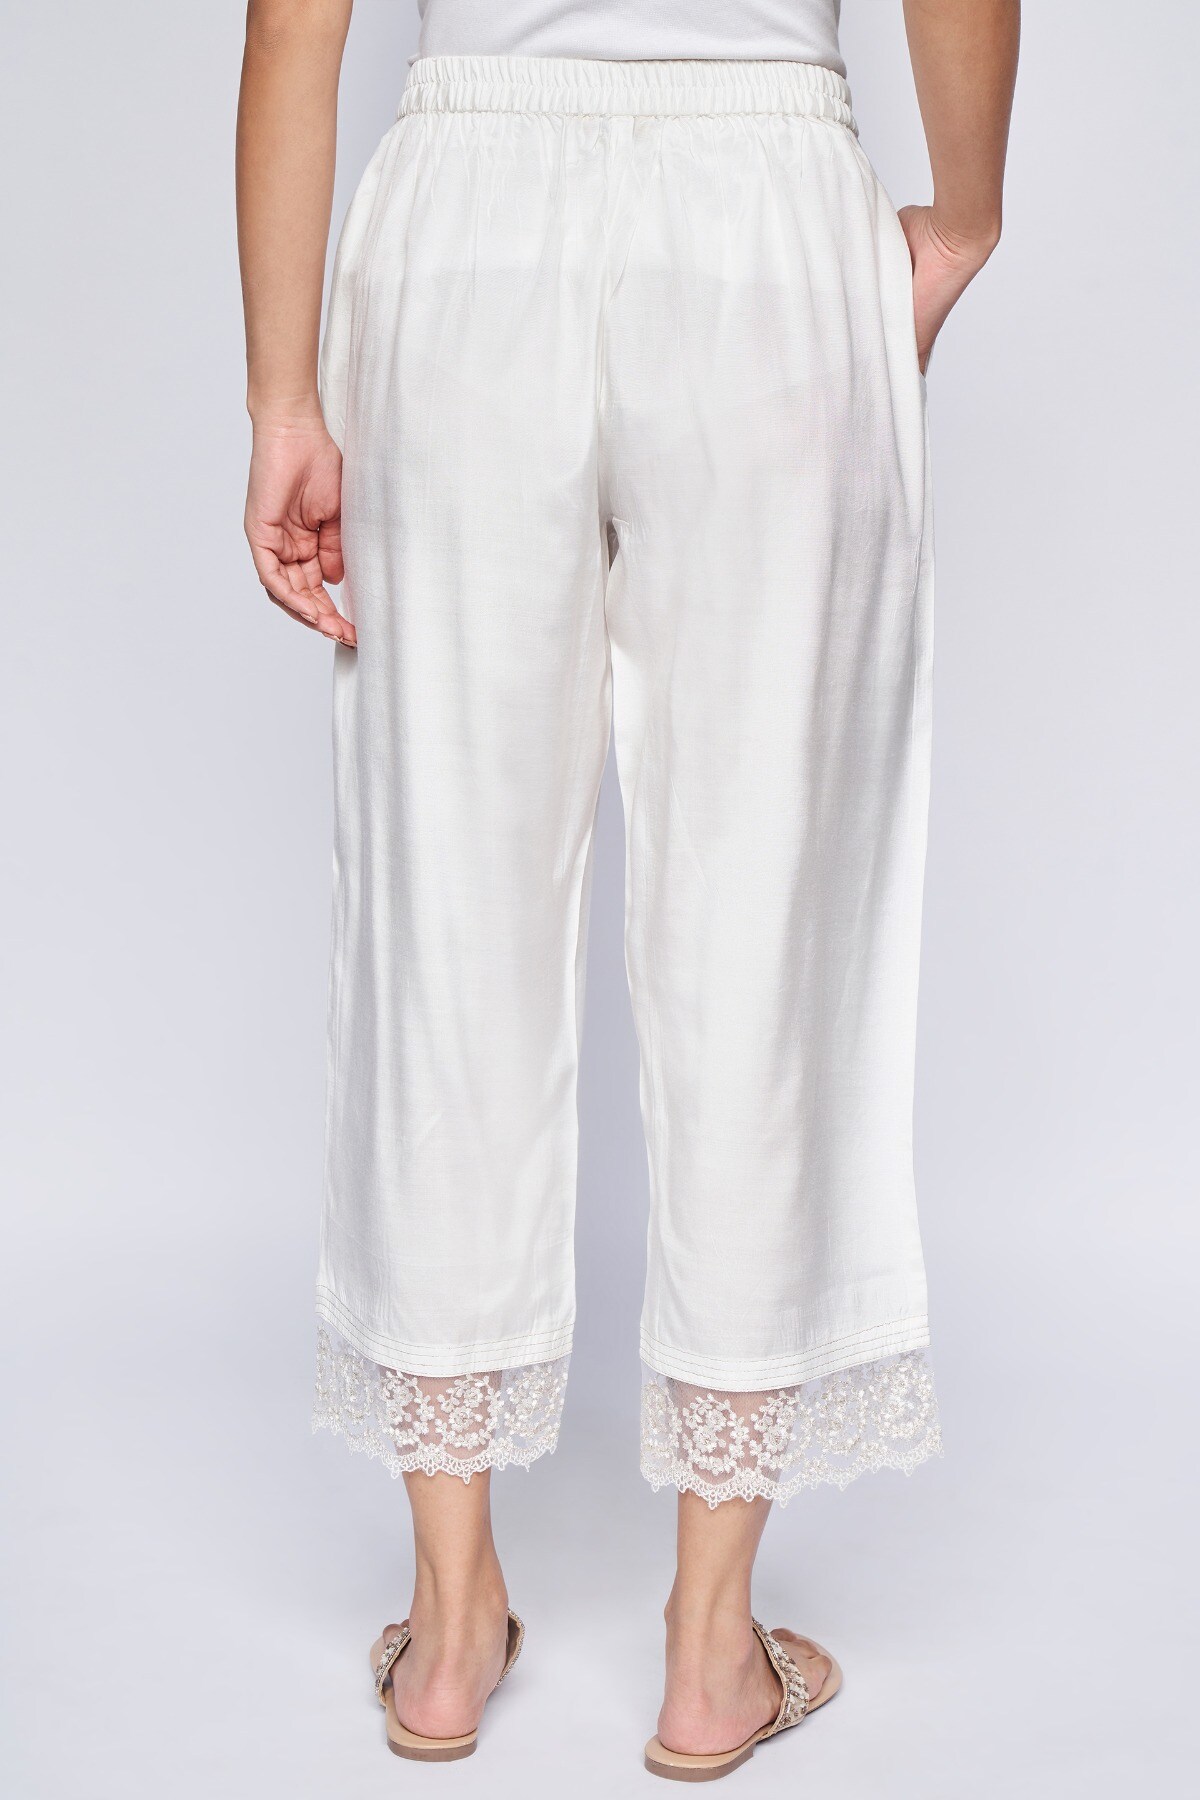 Cato Fashions | Cato White Linen Trousers